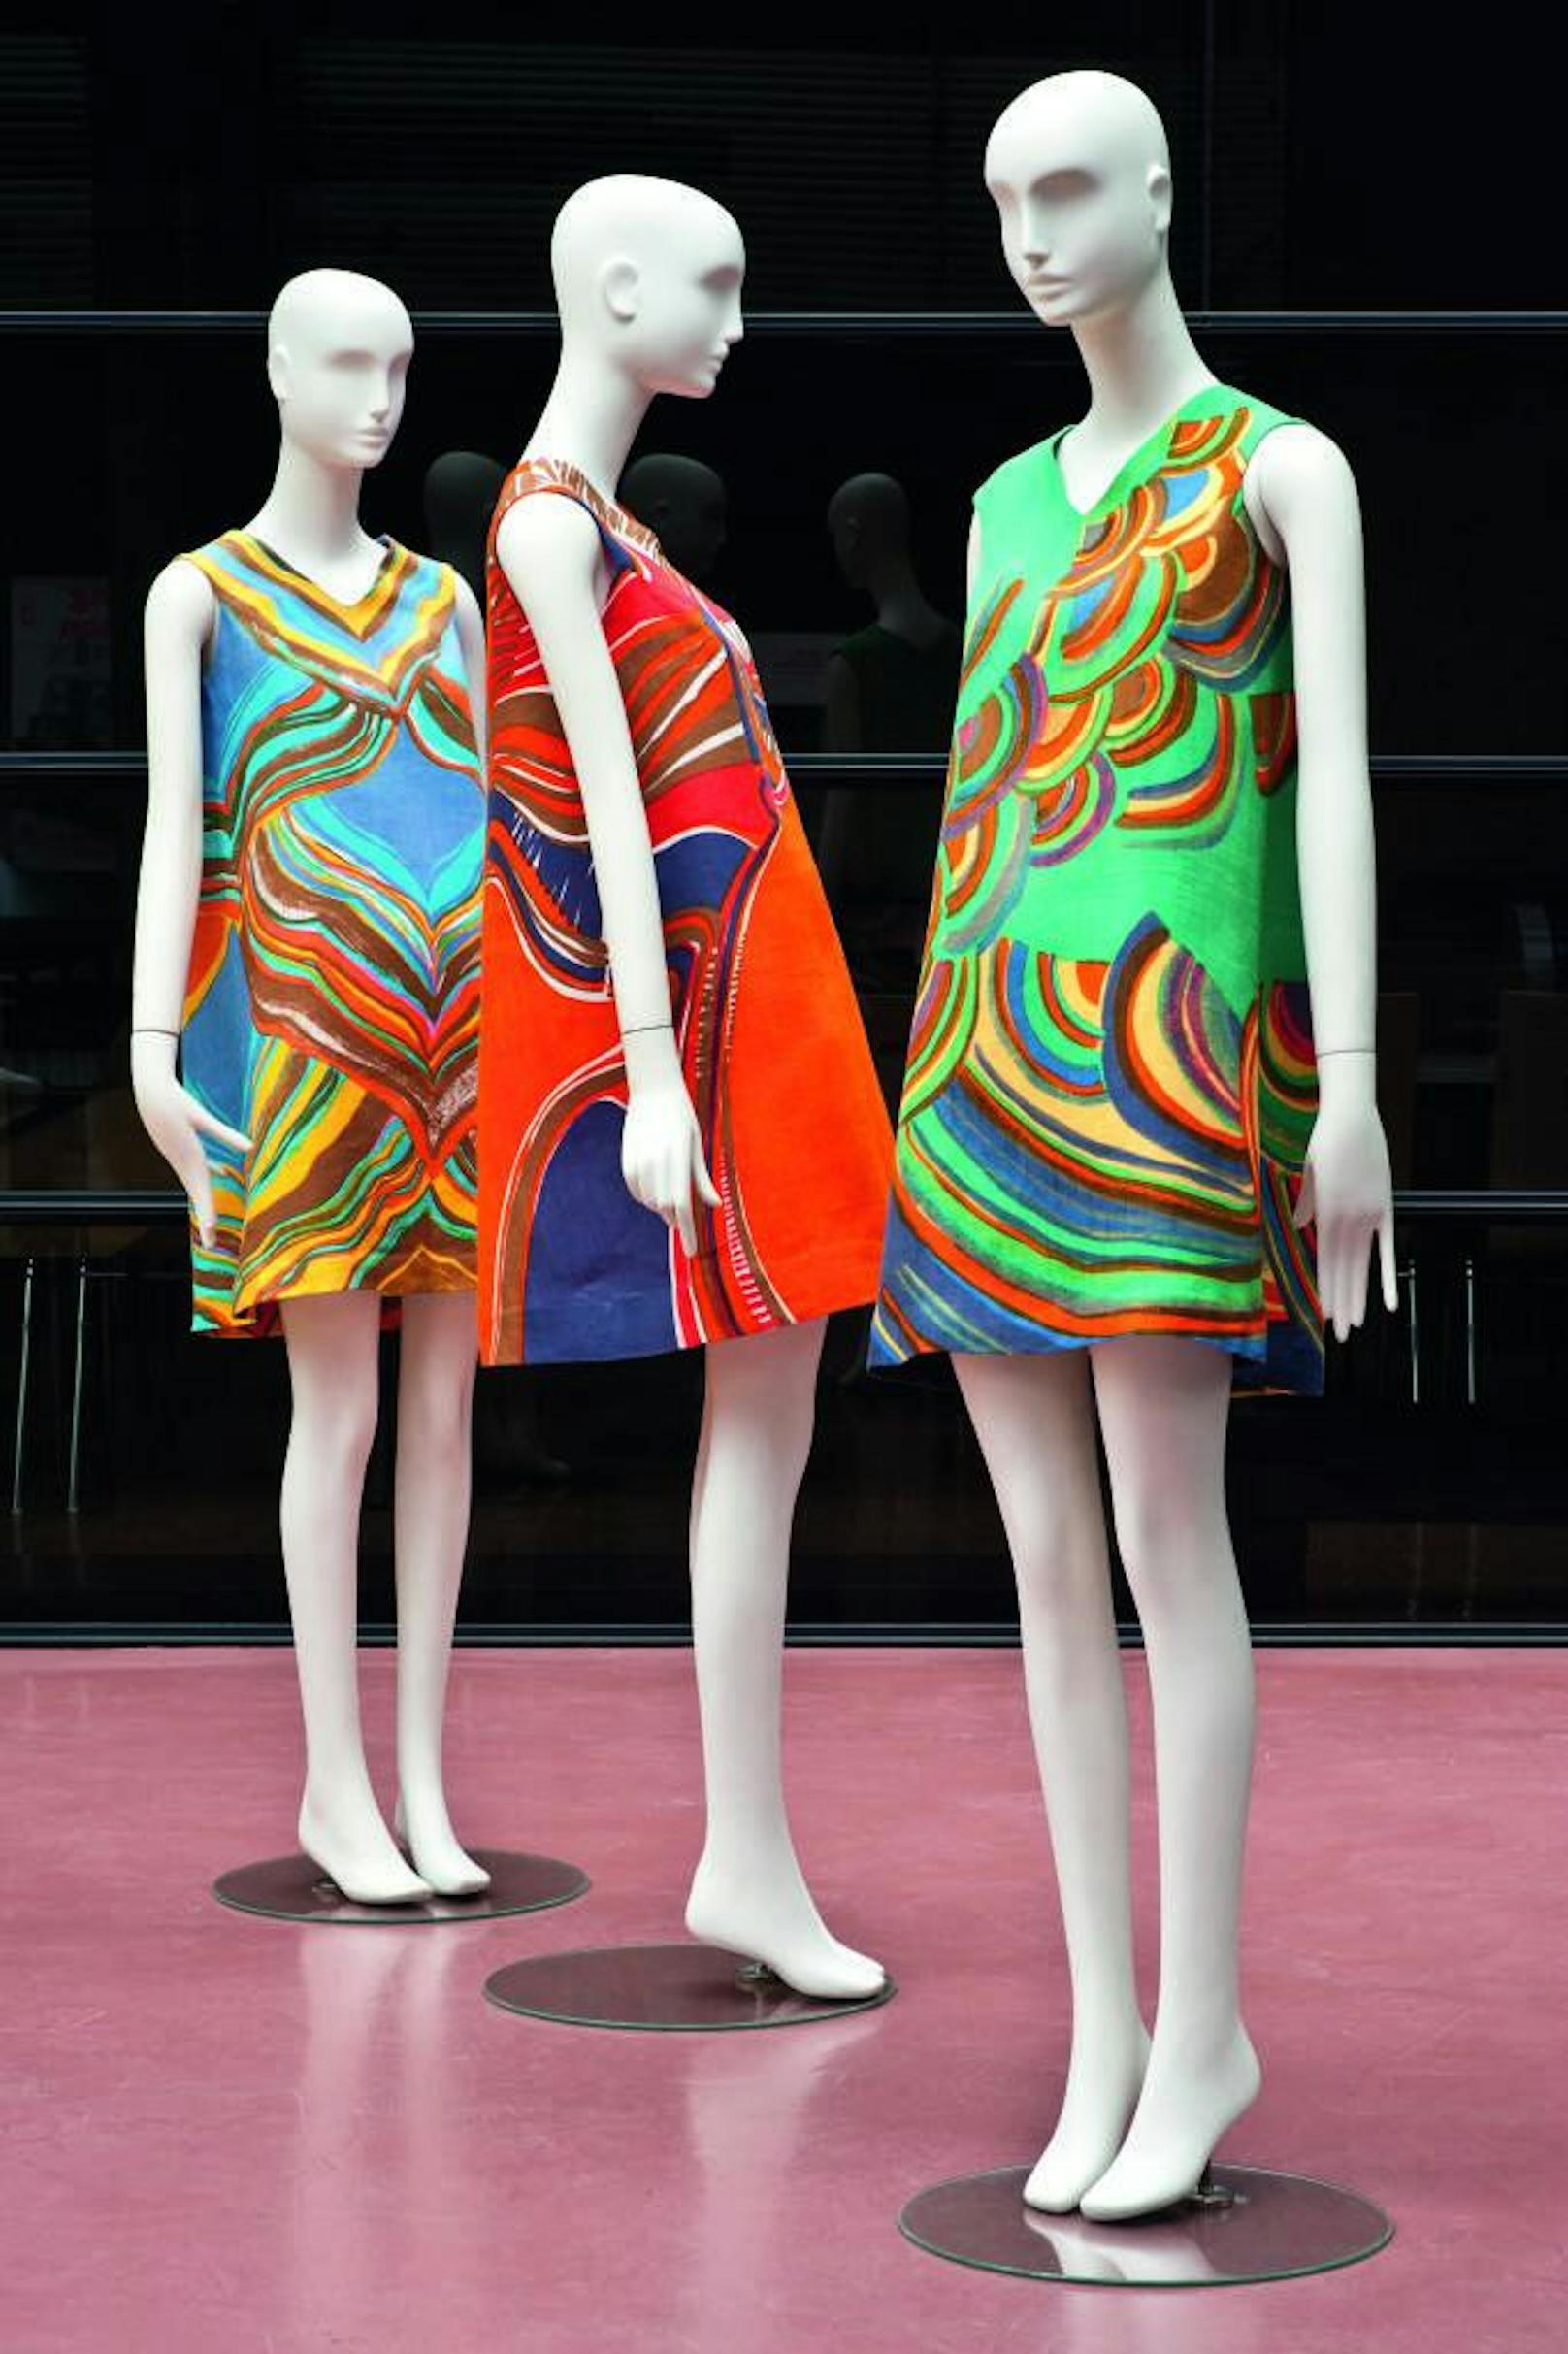 Renate Kowall, Mini-Hängerkleider um 1970 

Buch 
Fashion - Aus der Kostüm- und Modesammlung der Universität für angewandte Kunst Wien

Credit: Christin Losta